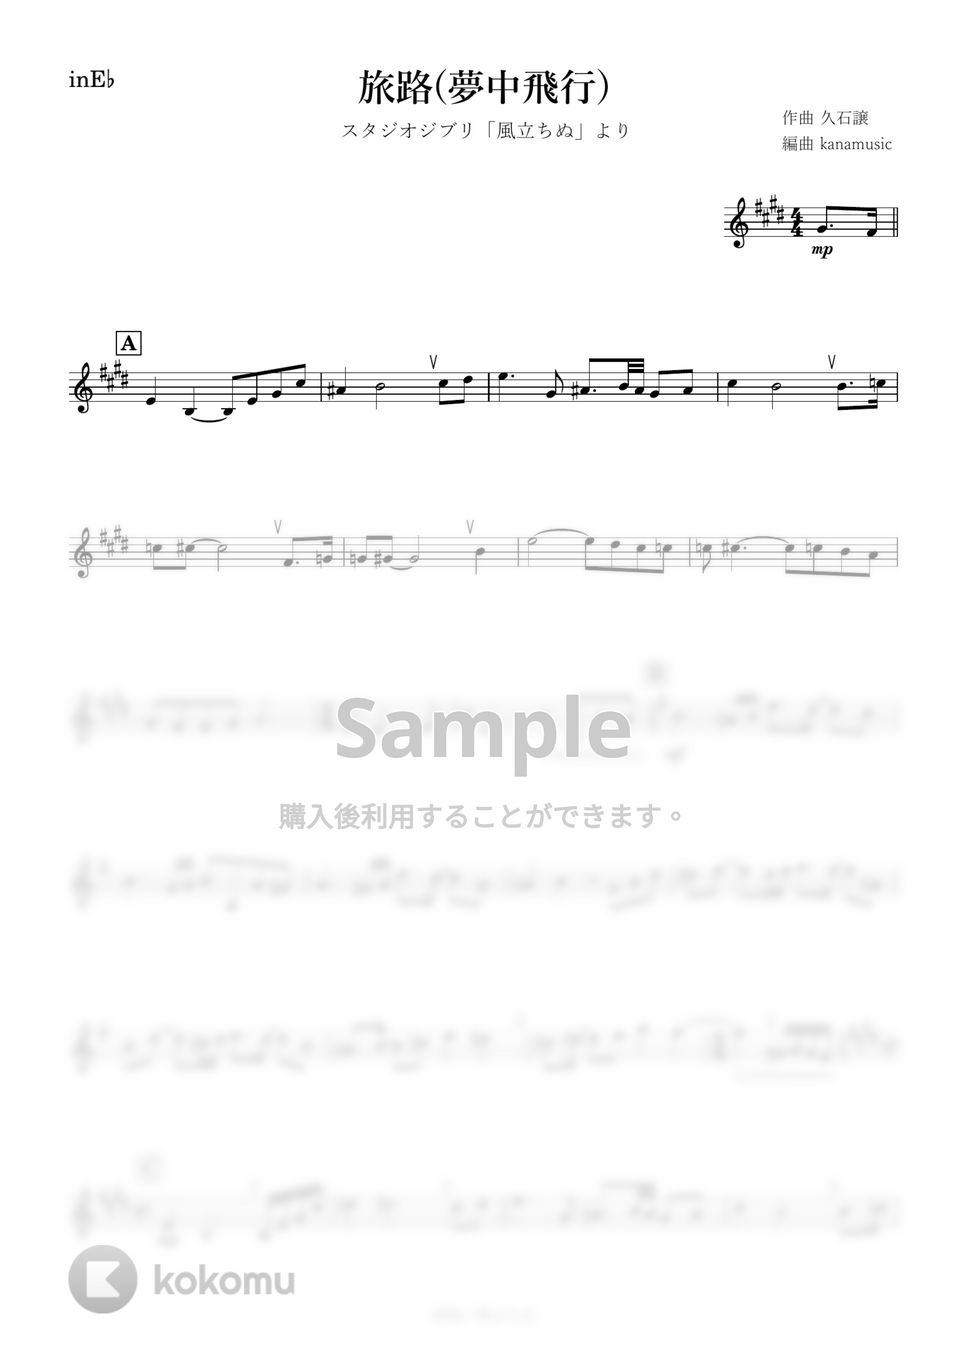 風立ちぬ - 旅路 (E♭) by kanamusic